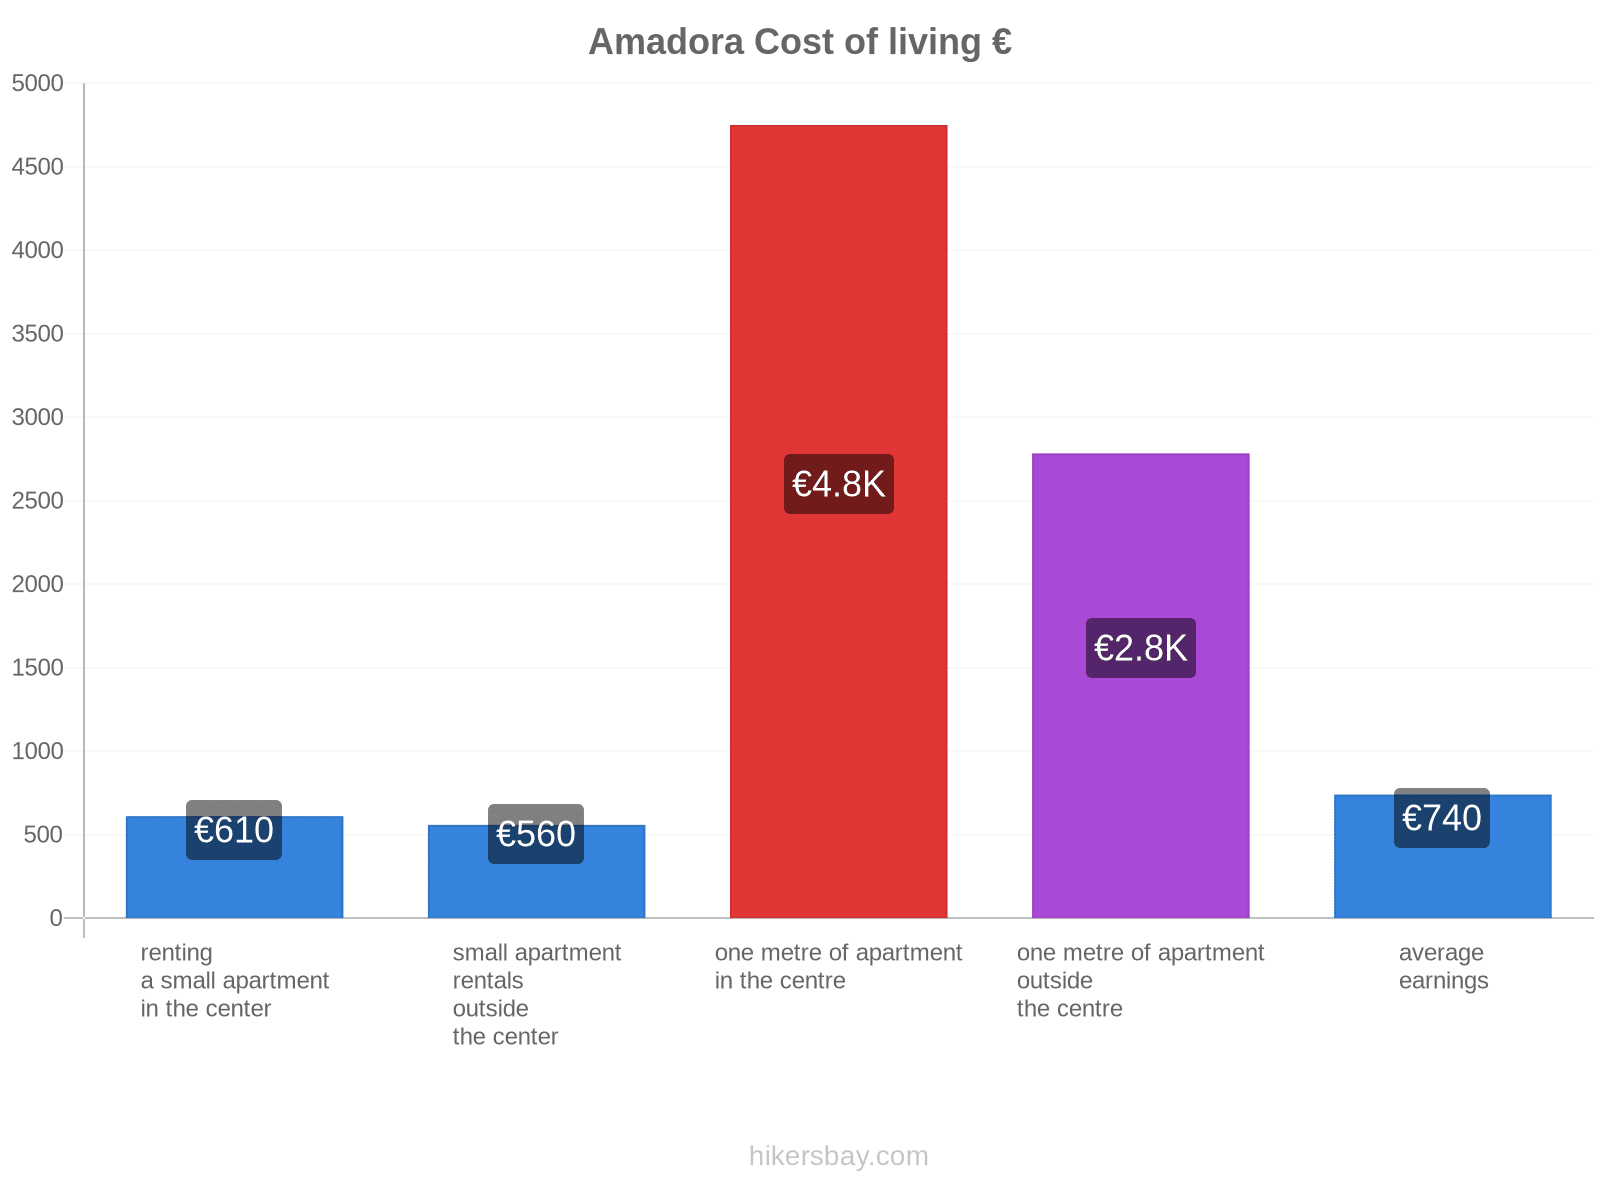 Amadora cost of living hikersbay.com